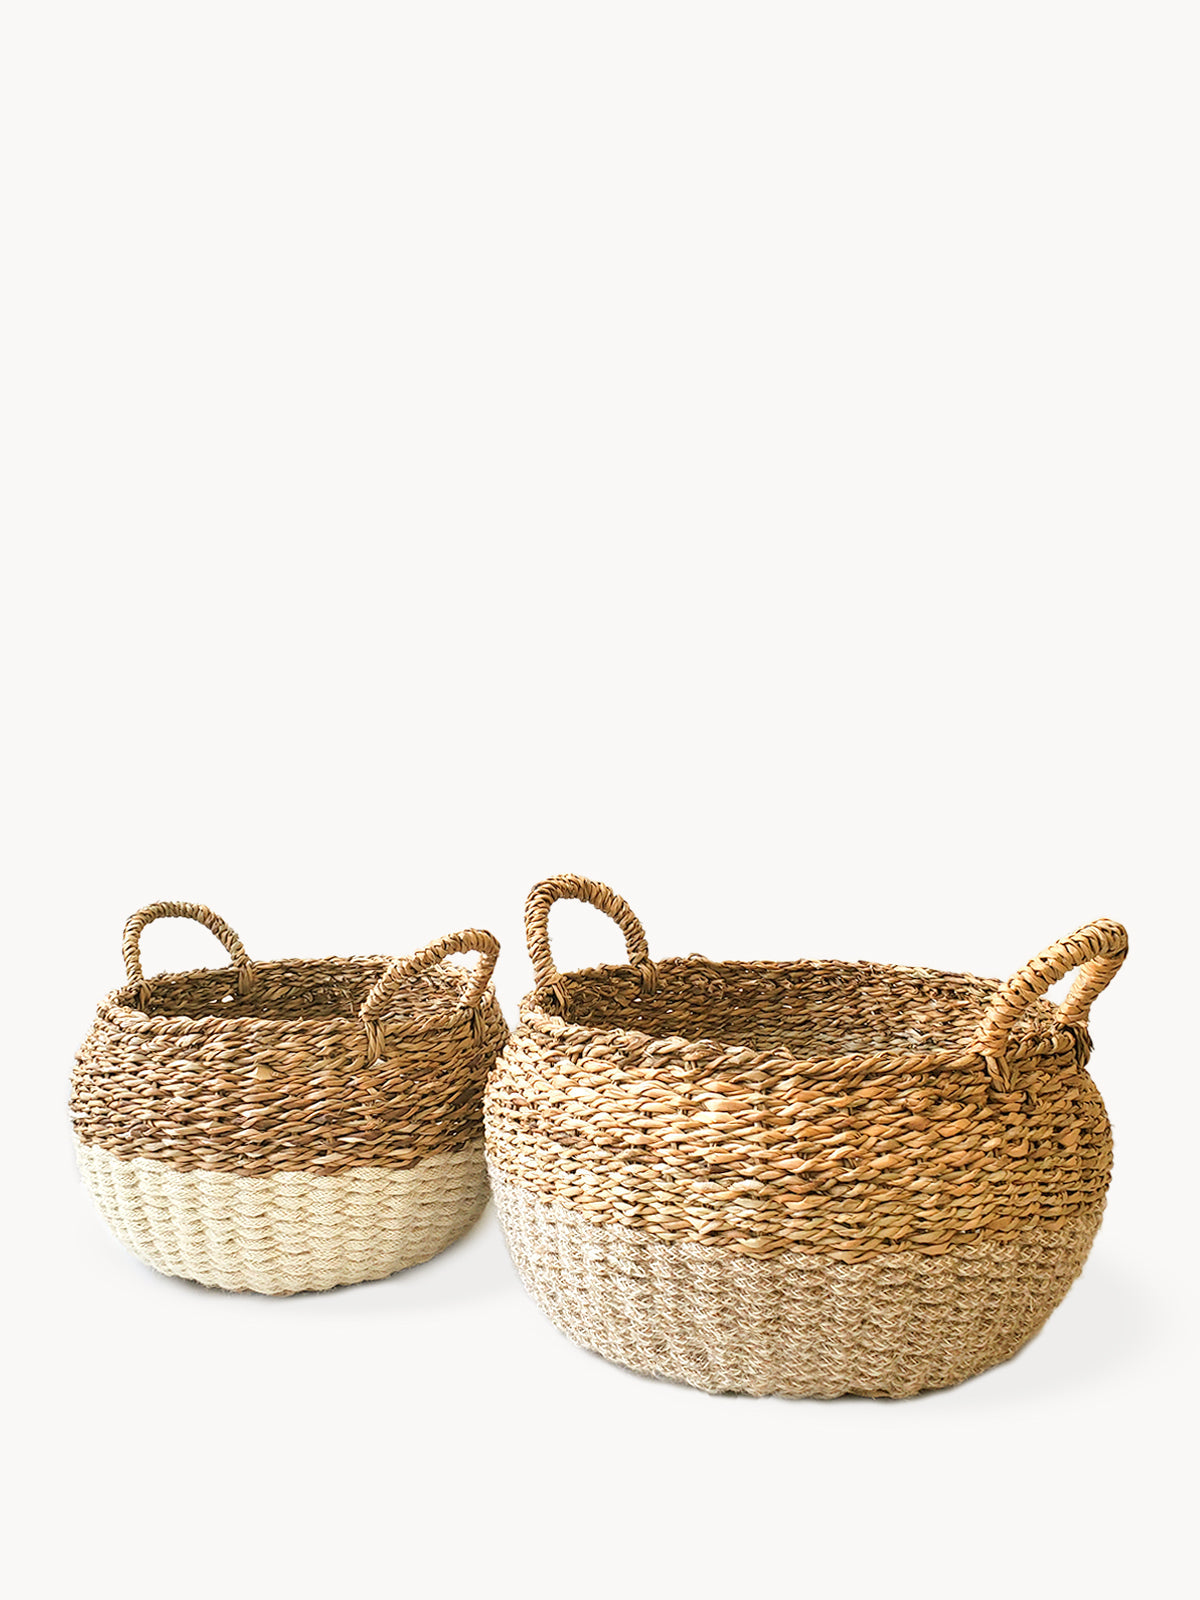 Ula Floor Basket - Natural (Set of 2)